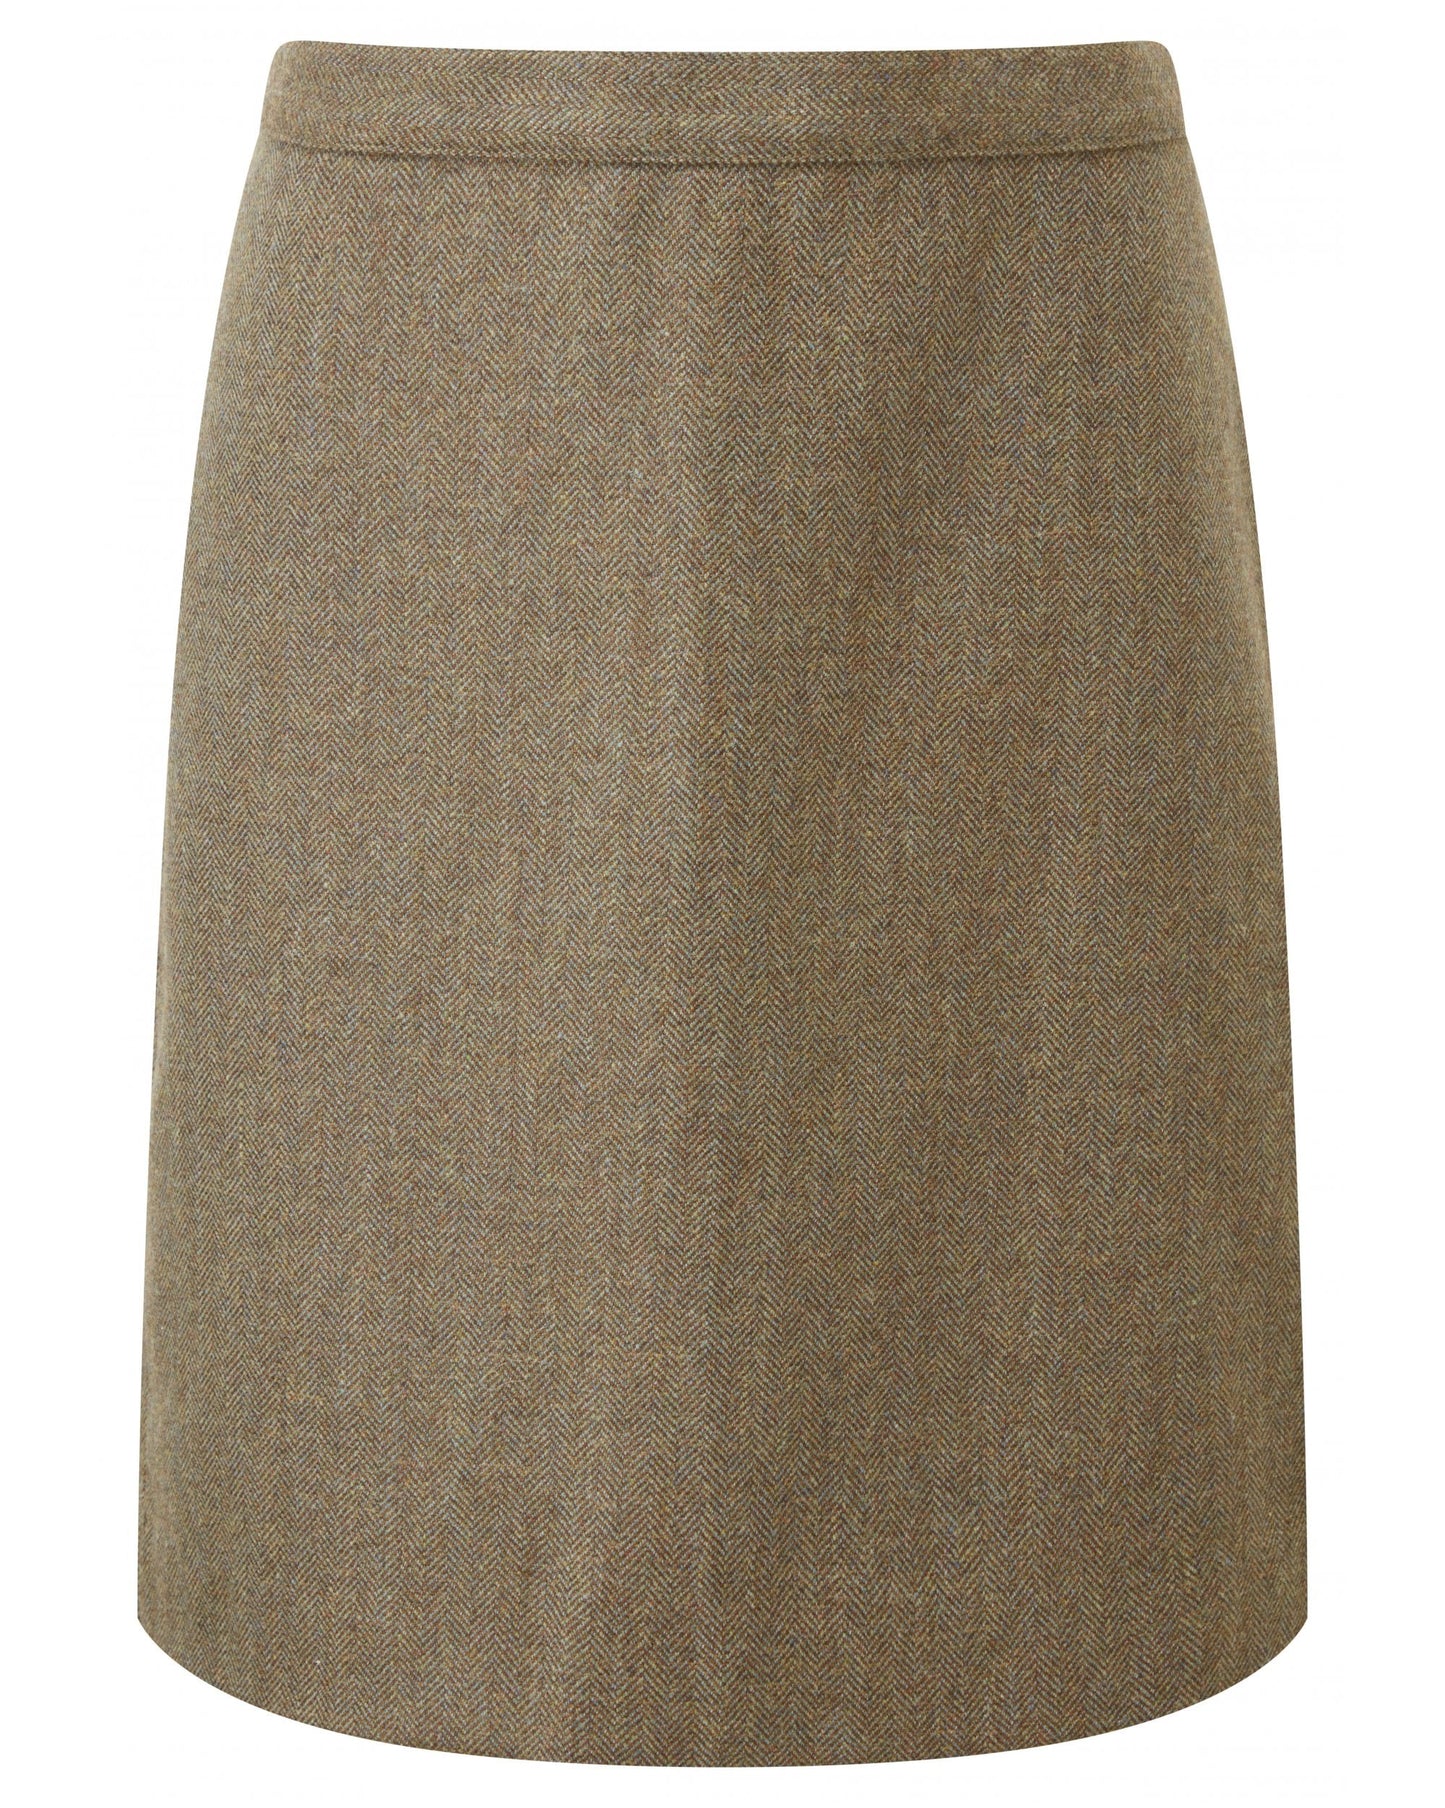 Beauly Tweed Skirt